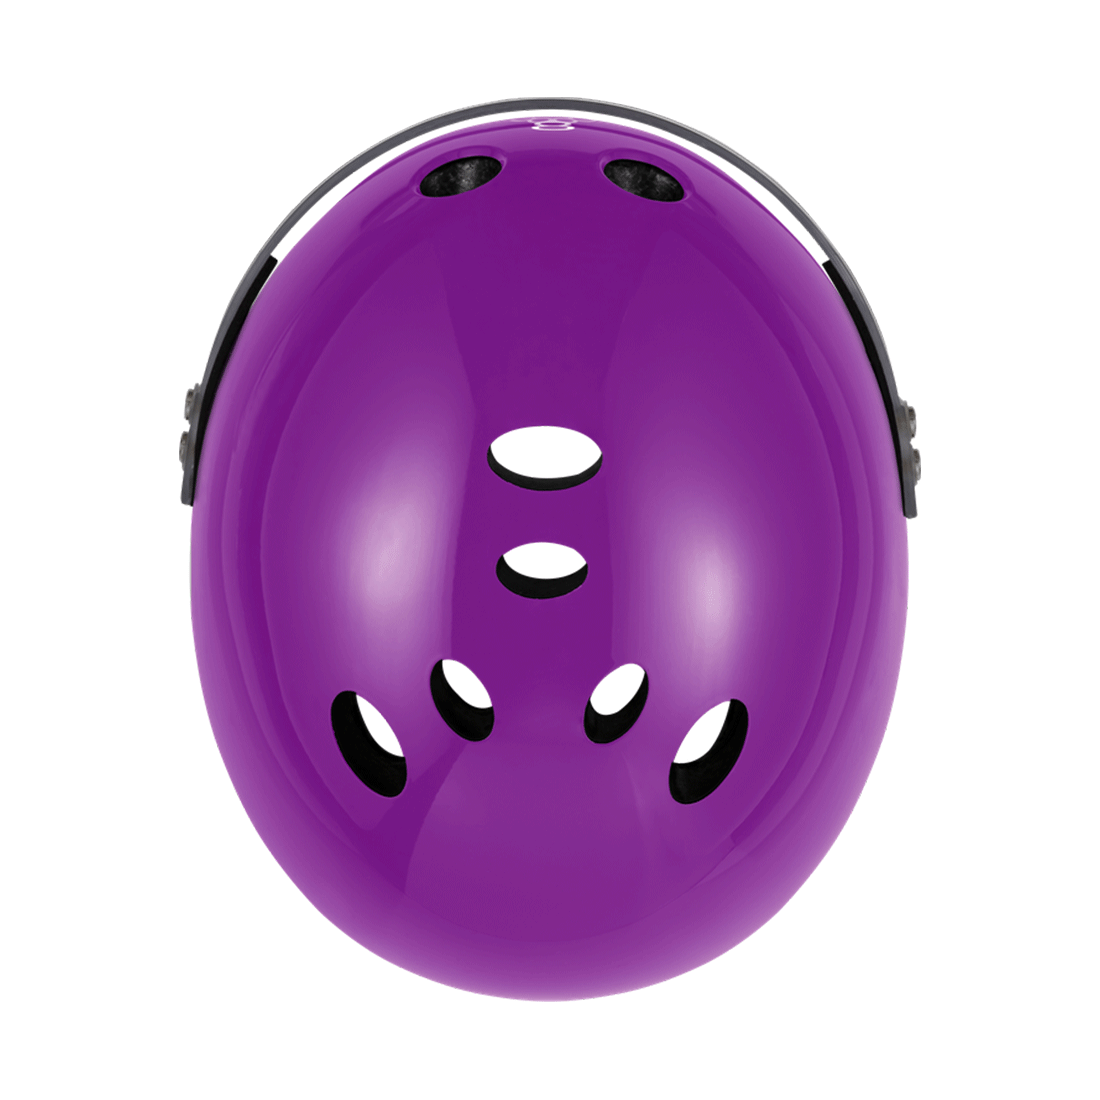 Triple 8 THE Cert SS Visor Helmet - Purple Gloss Helmets